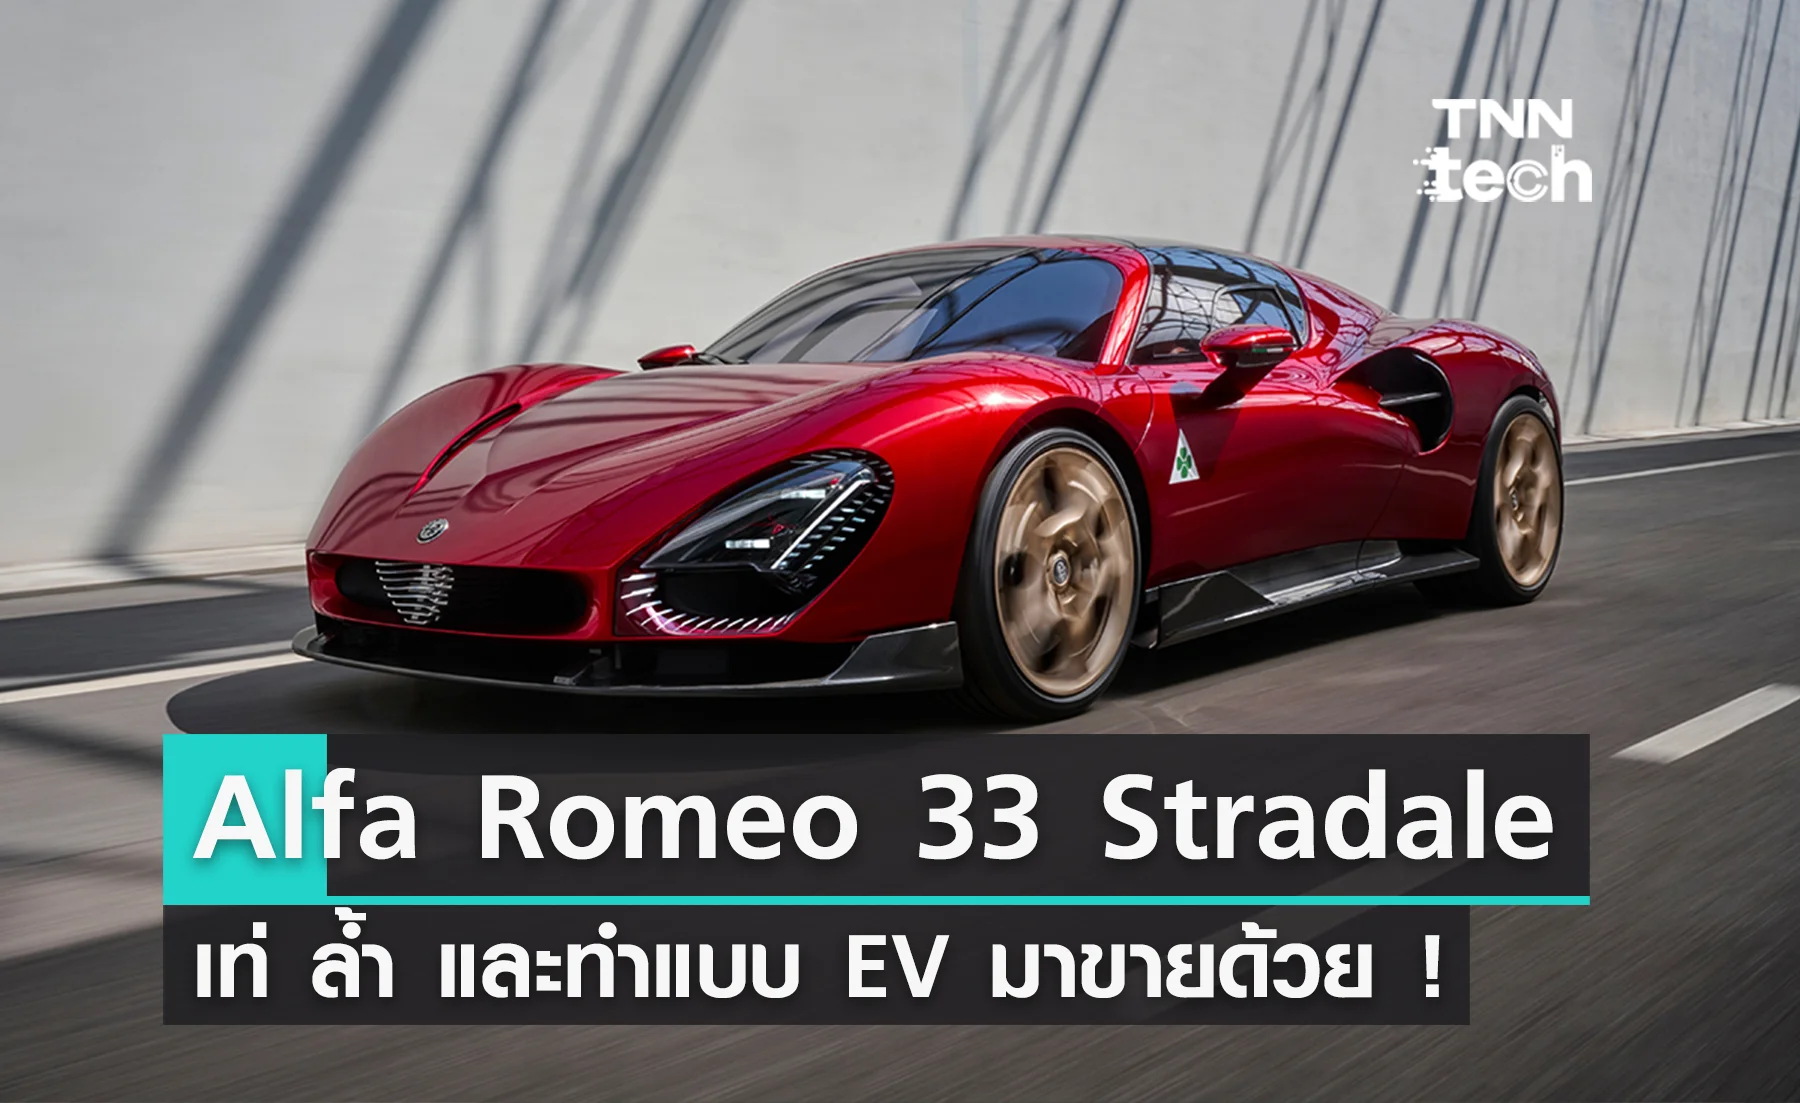 การกลับมาของตำนาน ! Alfa Romeo 33 Stradale เท่ ล้ำ และทำแบบ EV มาขายด้วย !